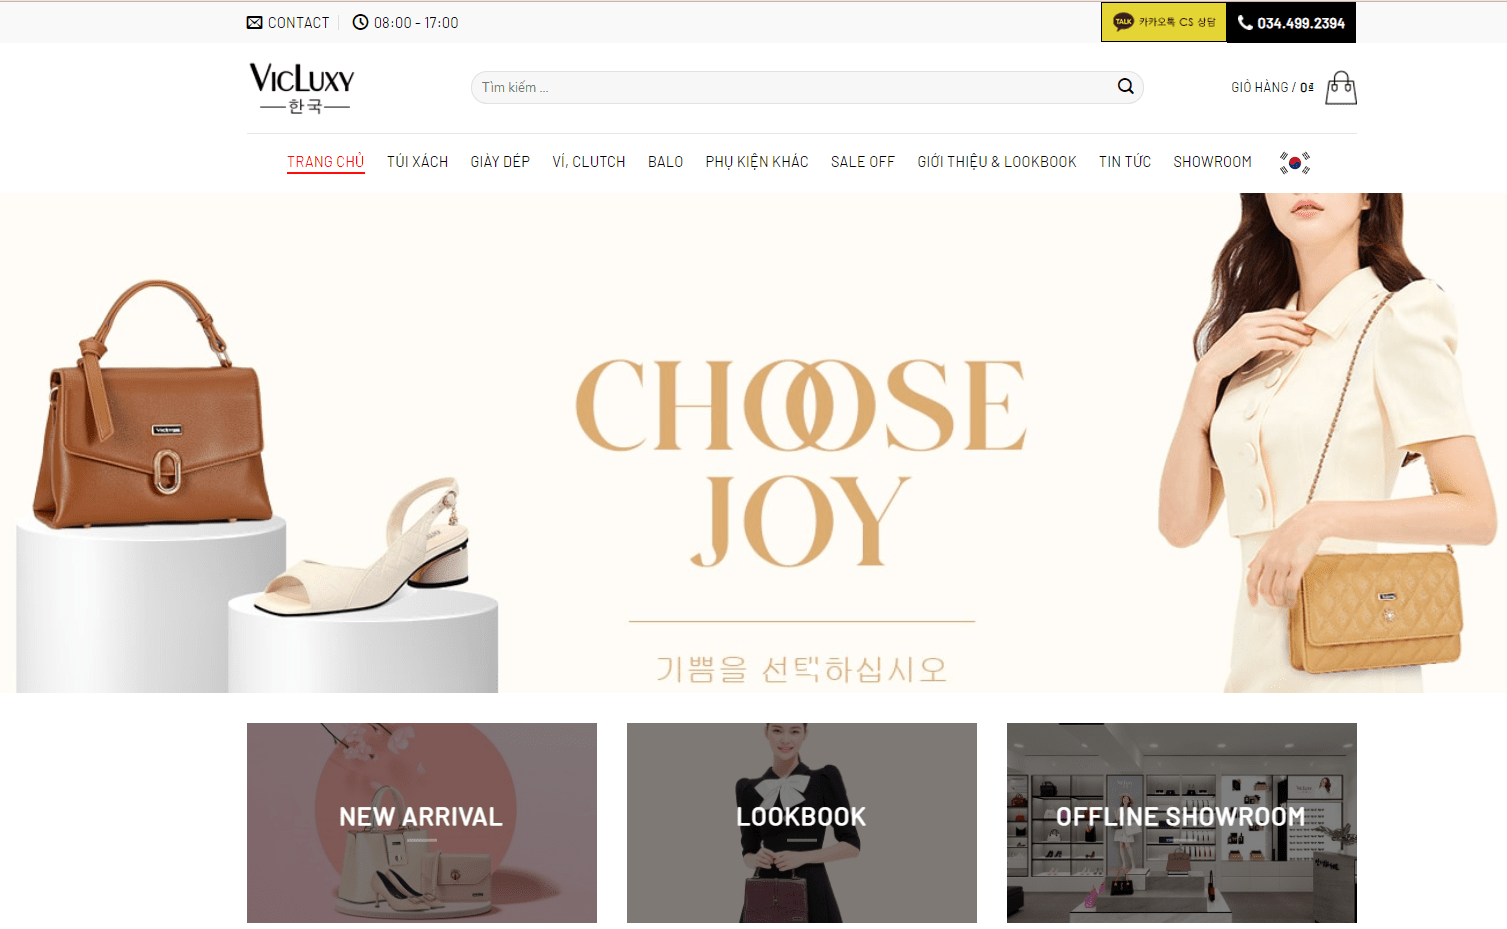 Mẫu website bán túi xách – giày dép – balo – VIC